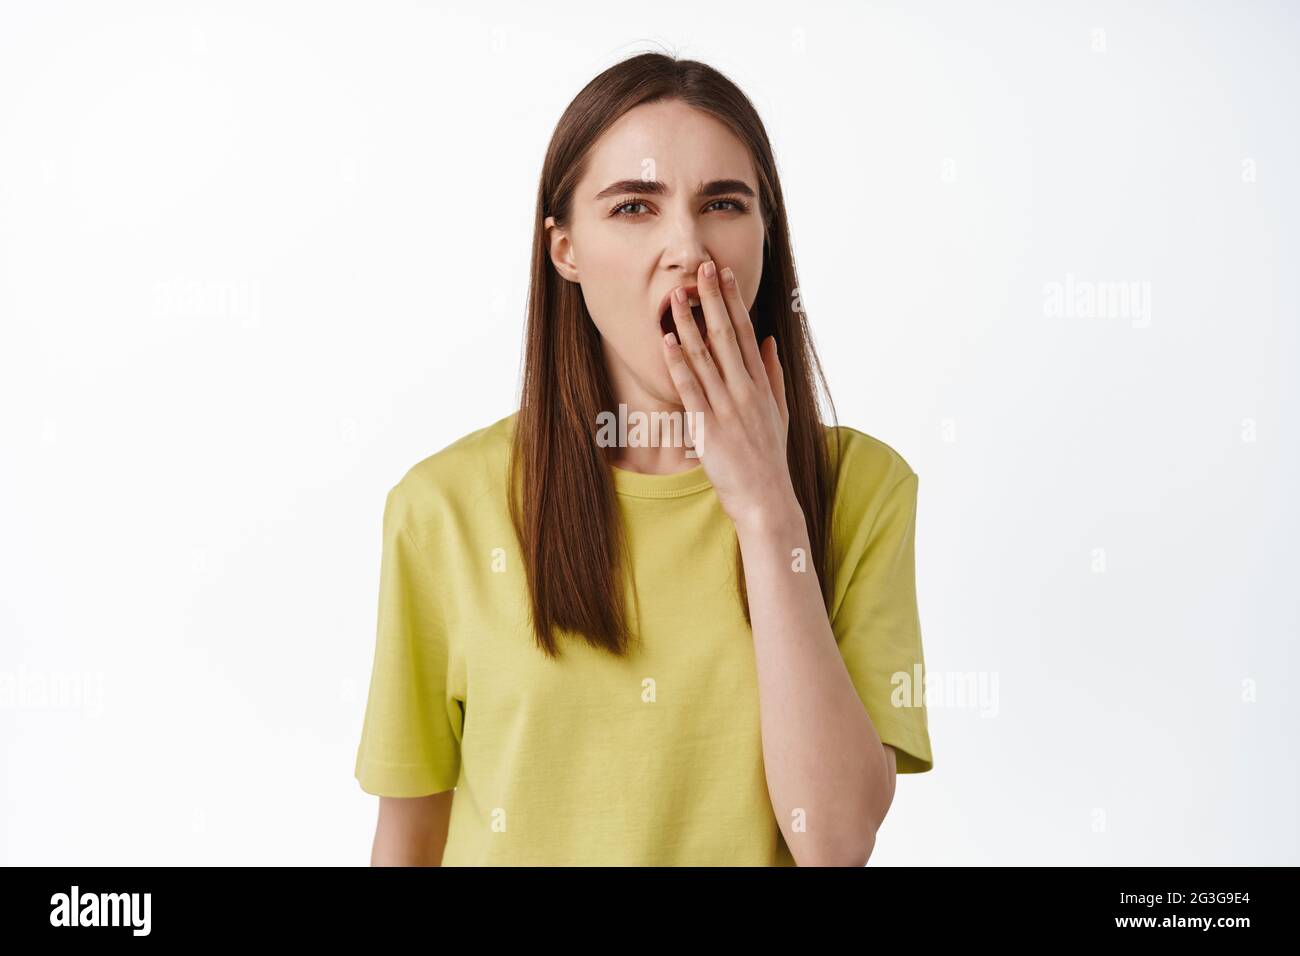 Porträt einer müden jungen Frau, die gähnt, den geöffneten Mund mit der Hand bedeckt und gähnt, sich erschöpft fühlt, sich vom Smth gelangweilt, im gelben T-Shirt dagegen stehend Stockfoto